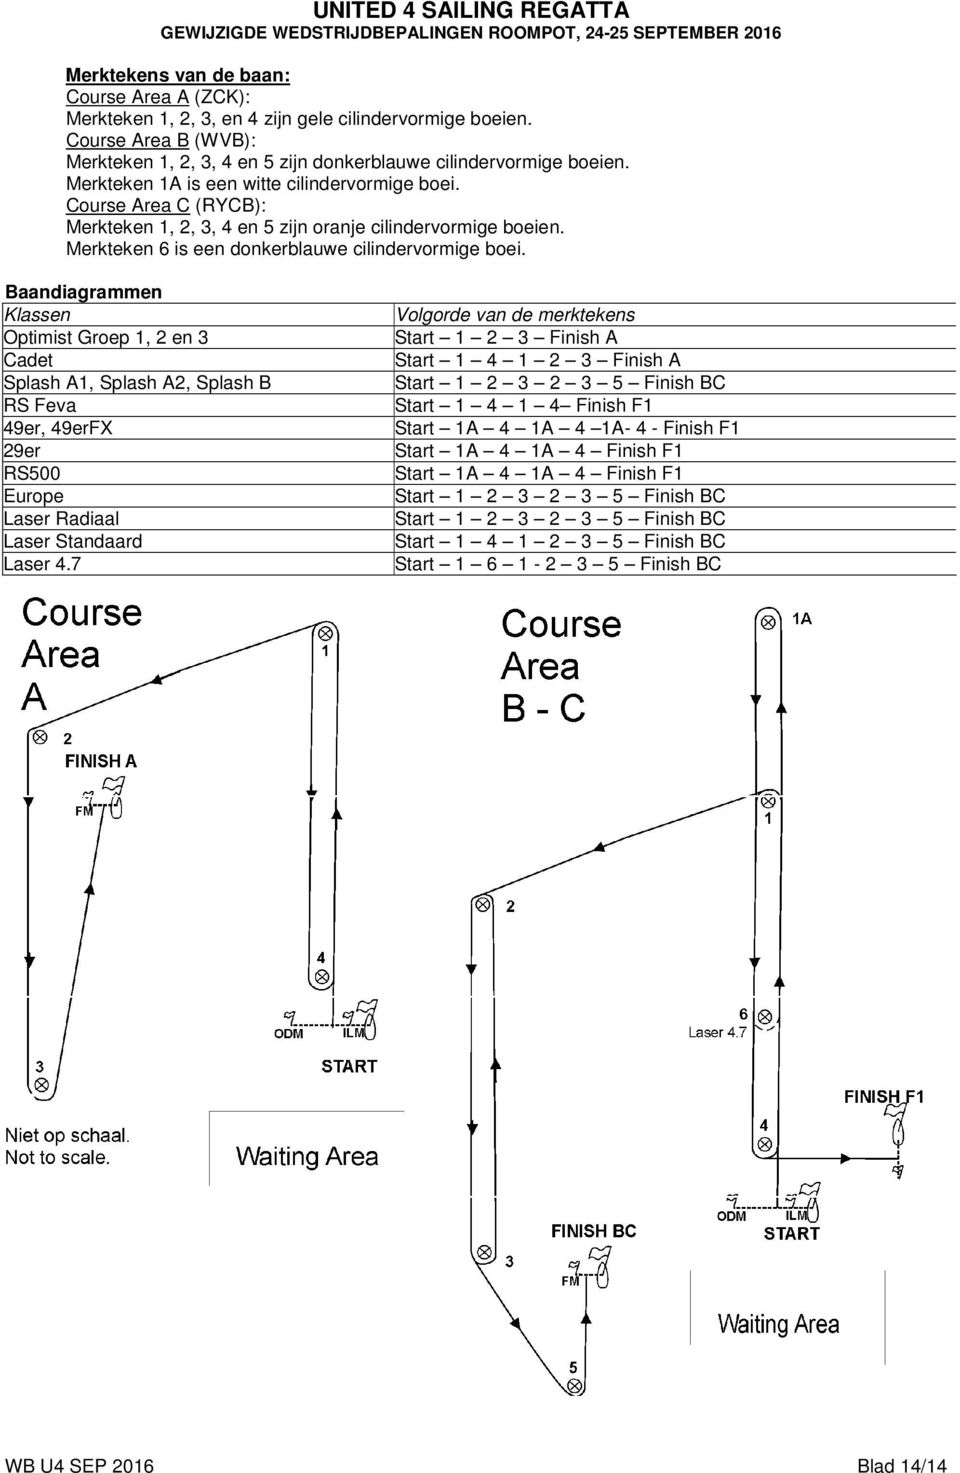 Course Area C (RYCB): Merkteken 1, 2, 3, 4 en 5 zijn oranje cilindervormige boeien. Merkteken 6 is een donkerblauwe cilindervormige boei.